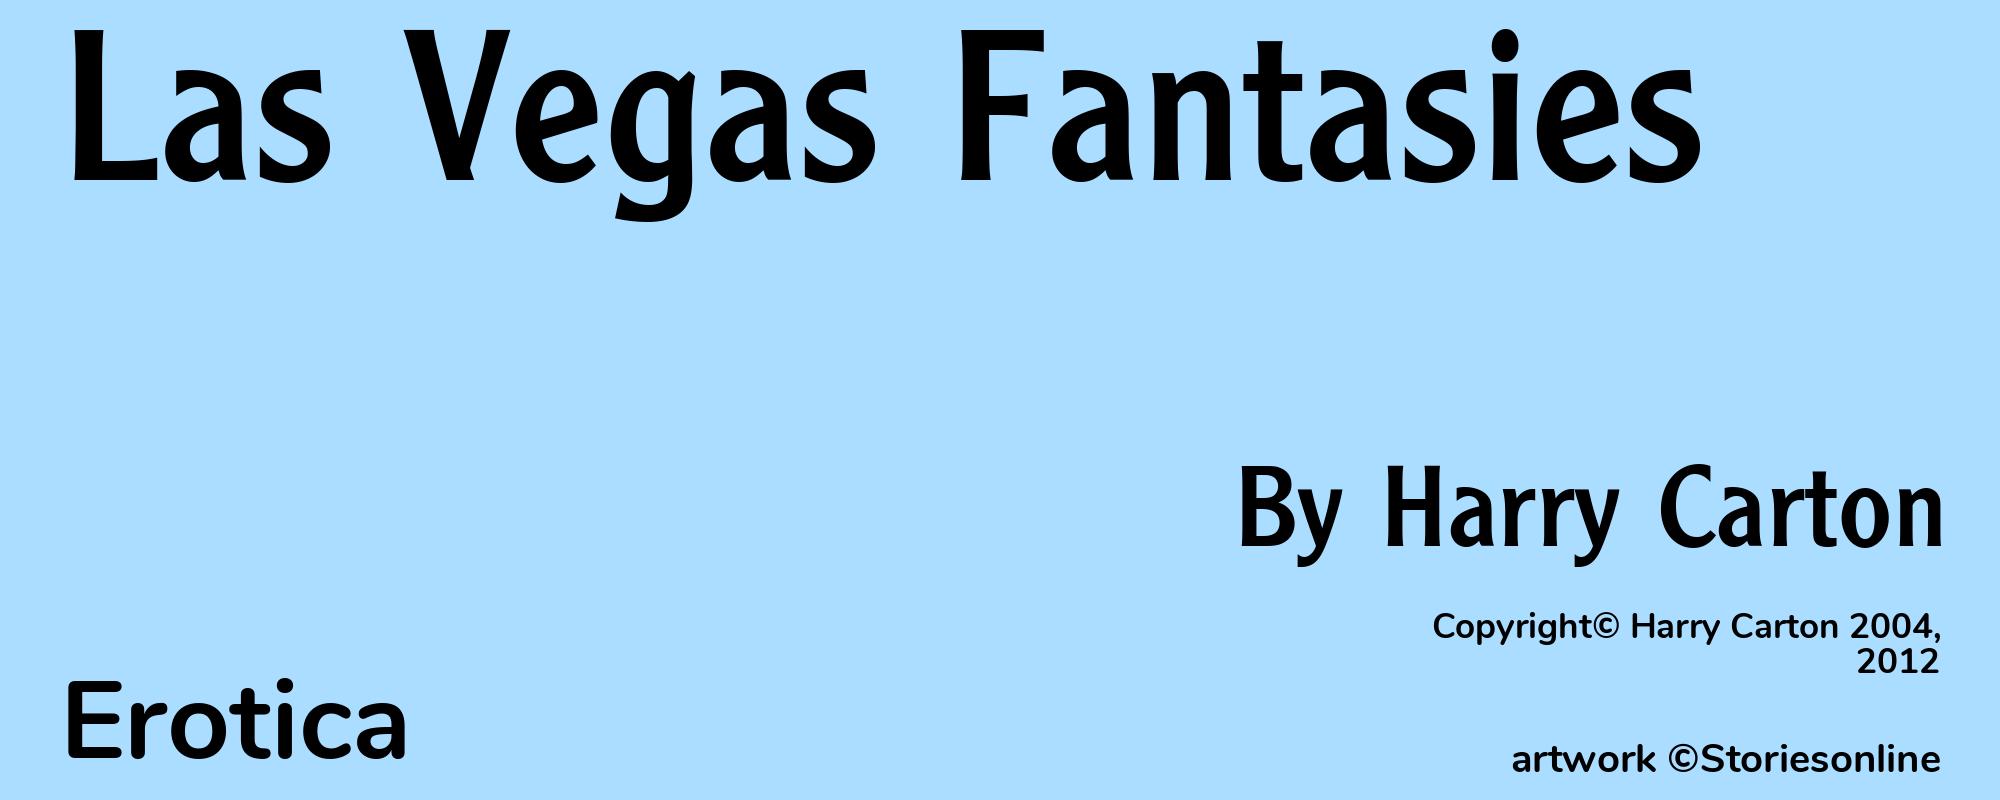 Las Vegas Fantasies - Cover